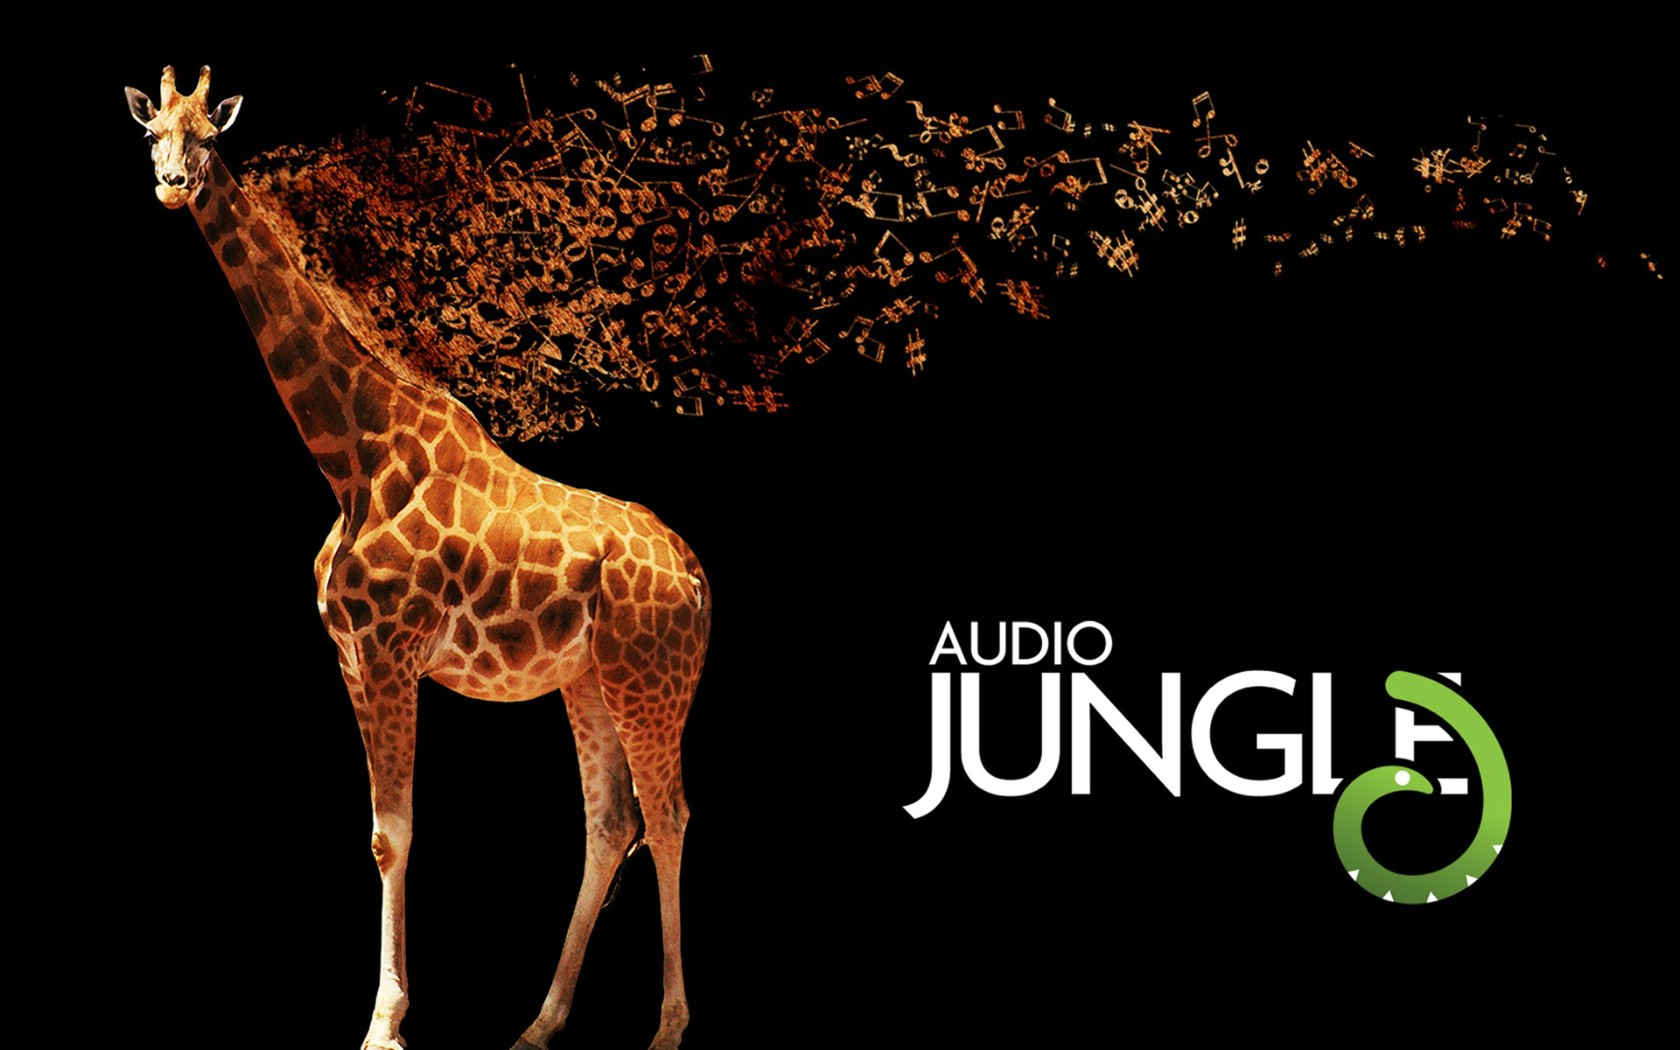 壁纸1680x1050 长颈鹿 Audio Jungle 创意壁纸壁纸 Audio Jungle 主题设计壁纸壁纸 Audio Jungle 主题设计壁纸图片 Audio Jungle 主题设计壁纸素材 插画壁纸 插画图库 插画图片素材桌面壁纸